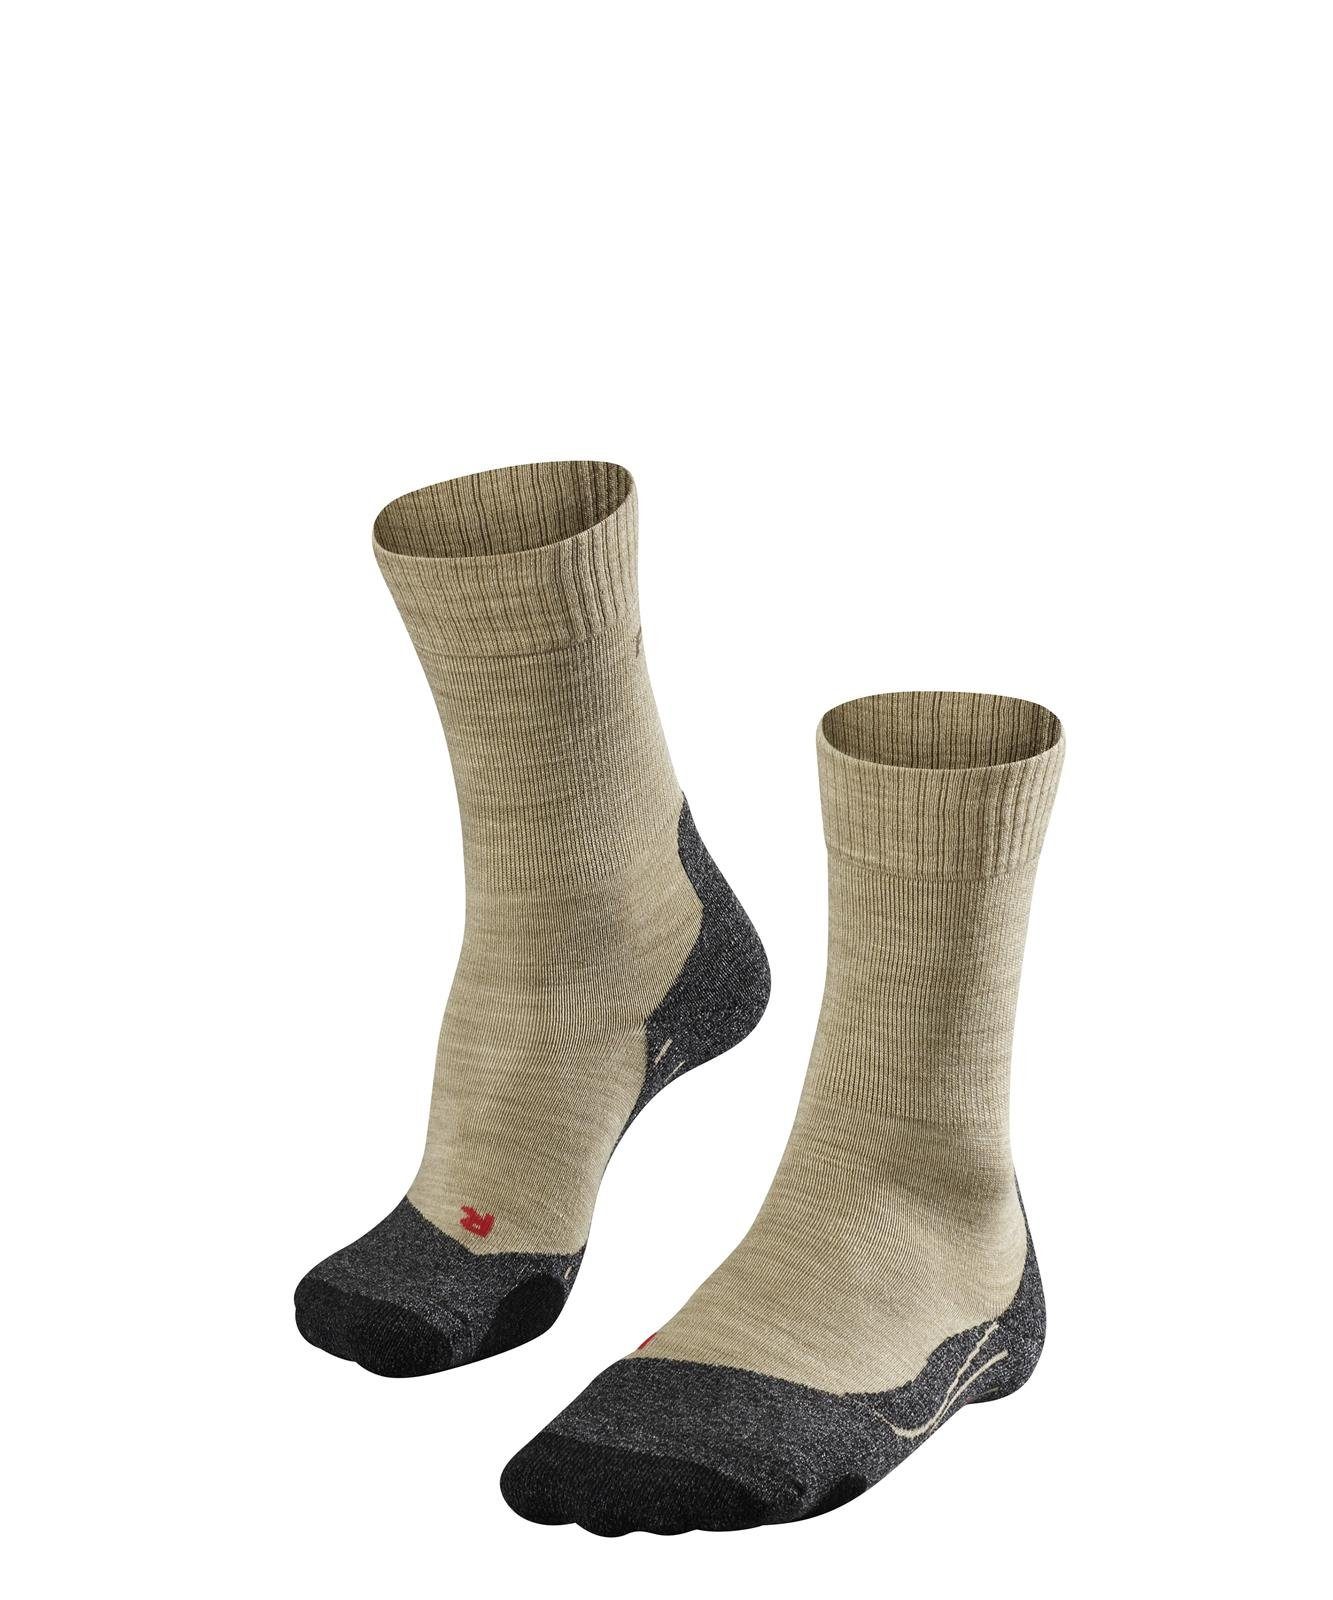 Sand - FALKE Polsterung (4100) Socken Herren Sportsocken Trekking TK2, Socken